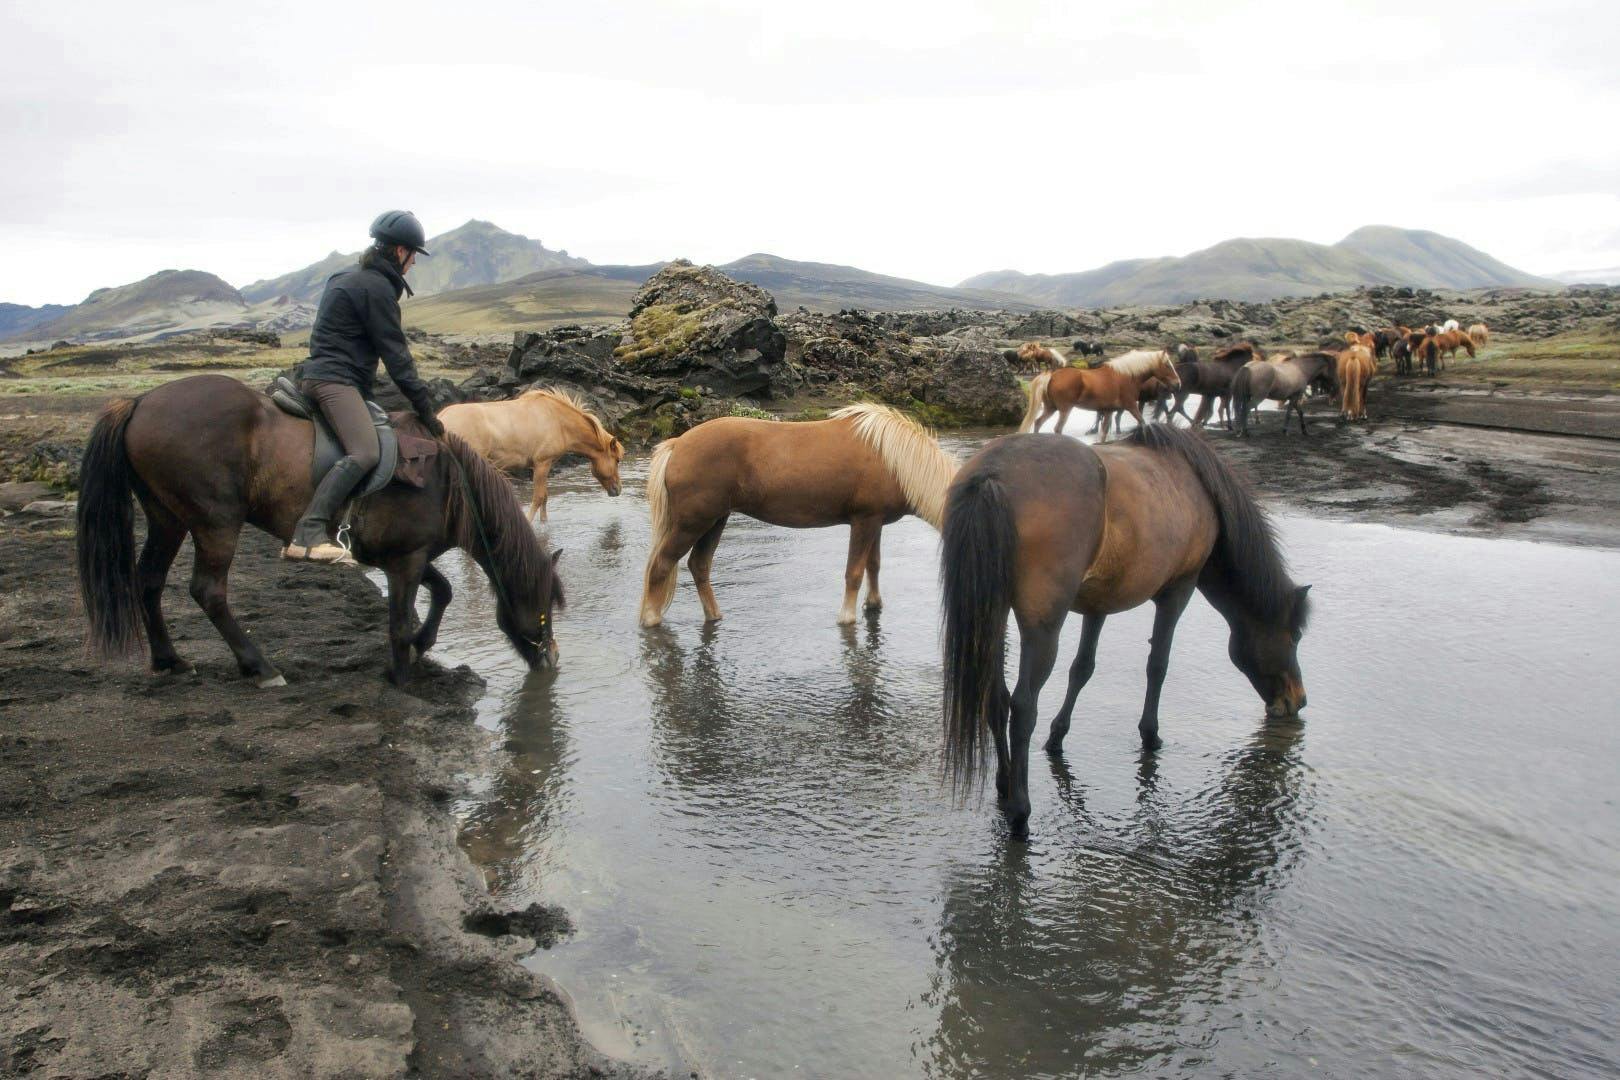 Horses fording a river